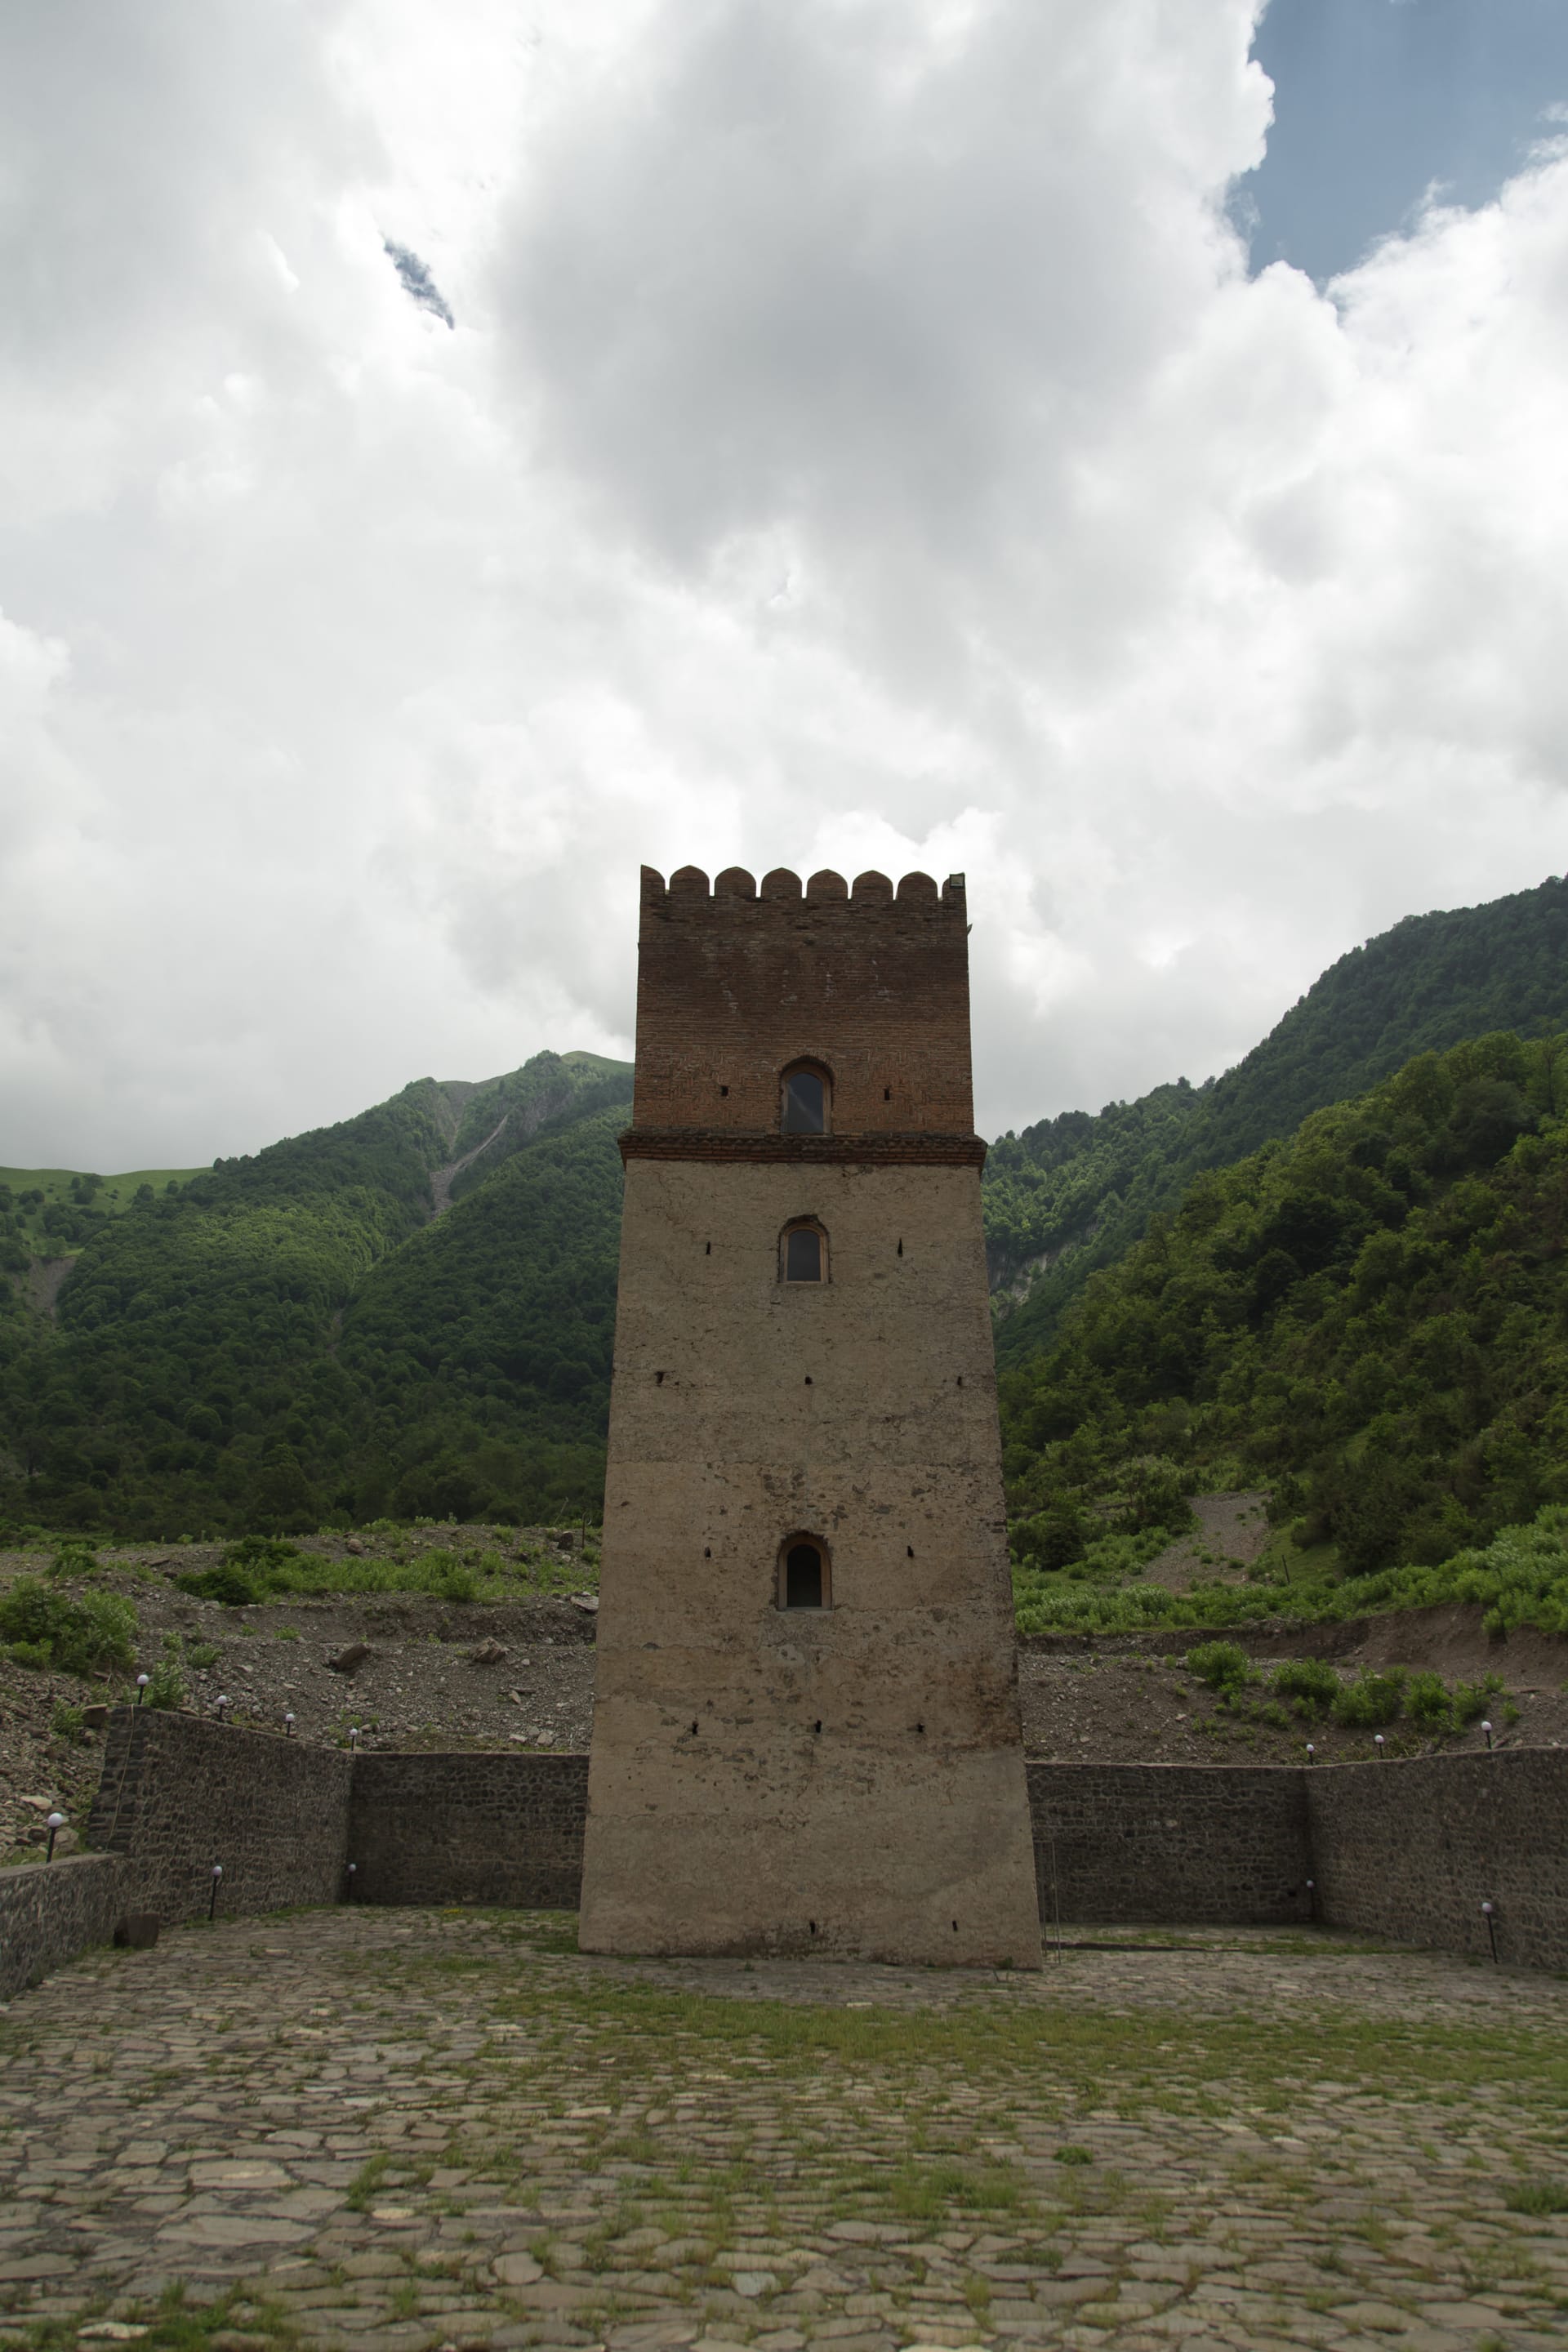 في هذه القلعة بأذربيجان.. كان الخان يعدم عشيقاته غير المخلصات